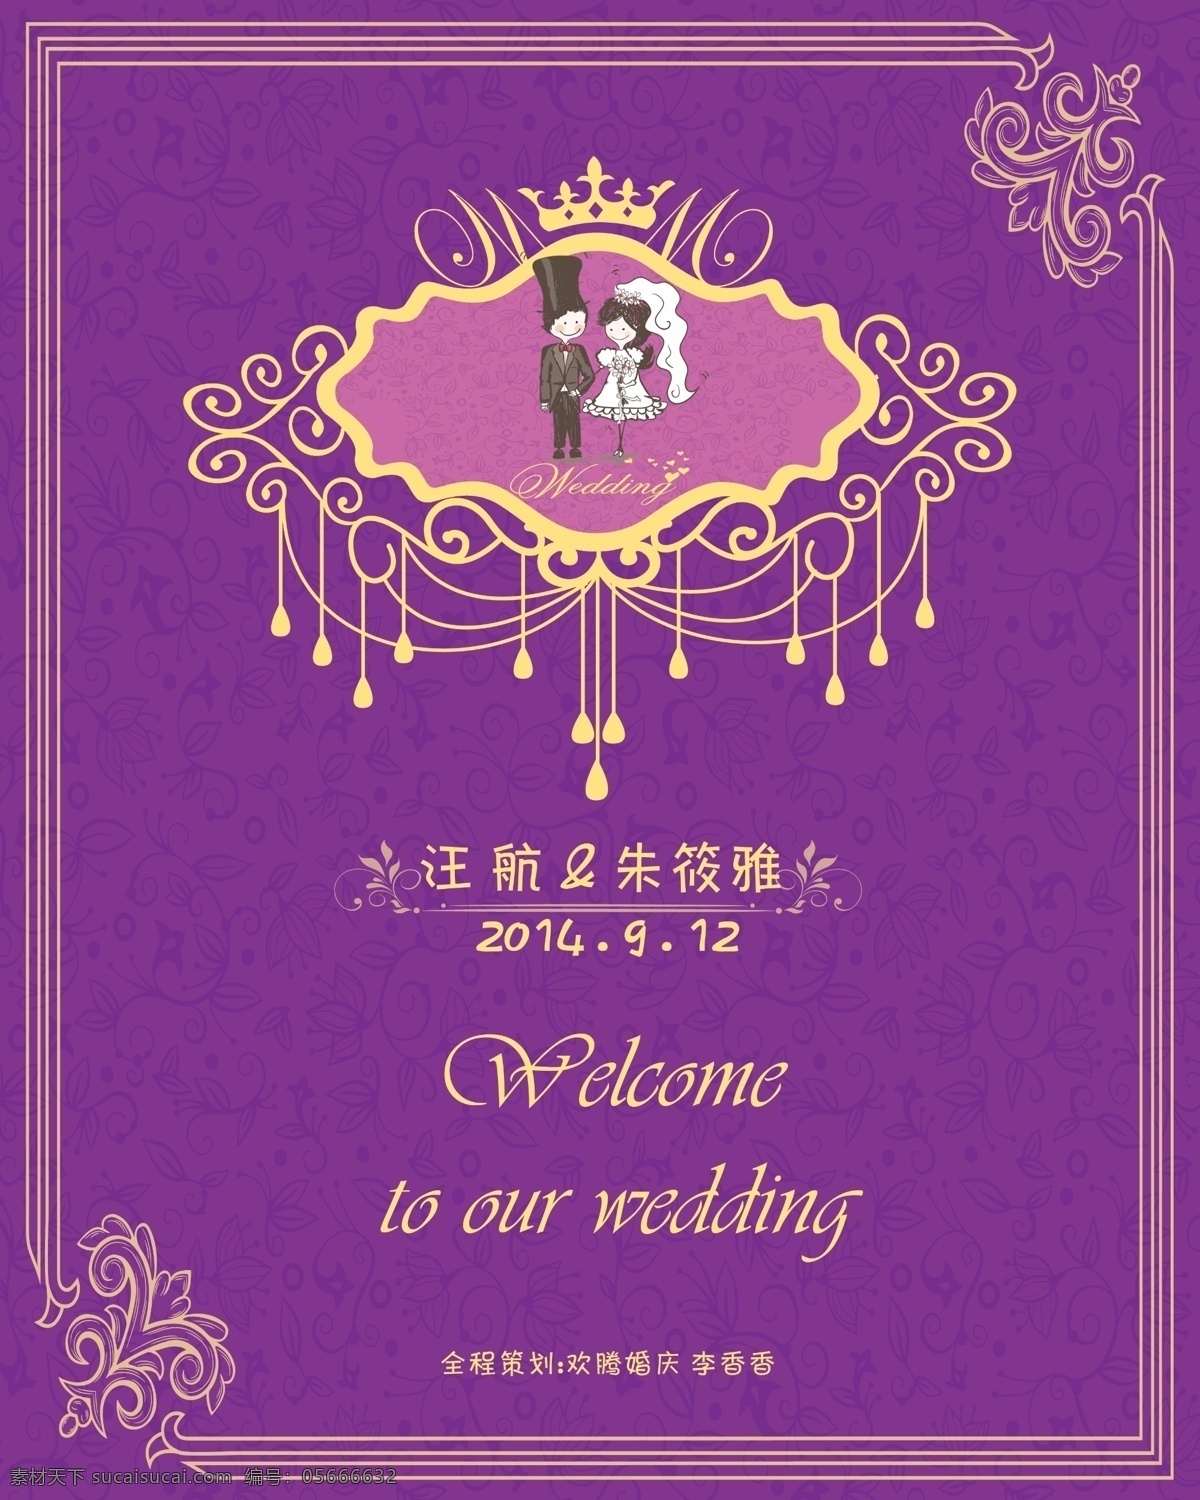 婚礼水晶牌 模版下载 婚礼水牌 婚礼 水牌 迎宾牌 紫色 欧式